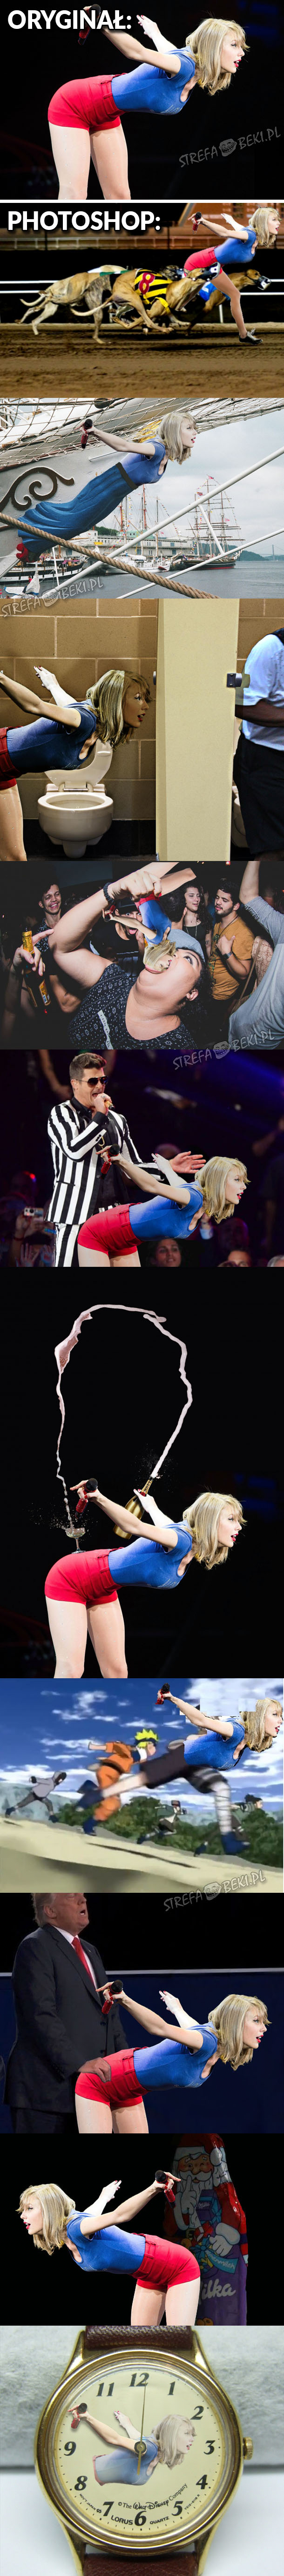 Taylor Swift i mistrzowie Photoshopa